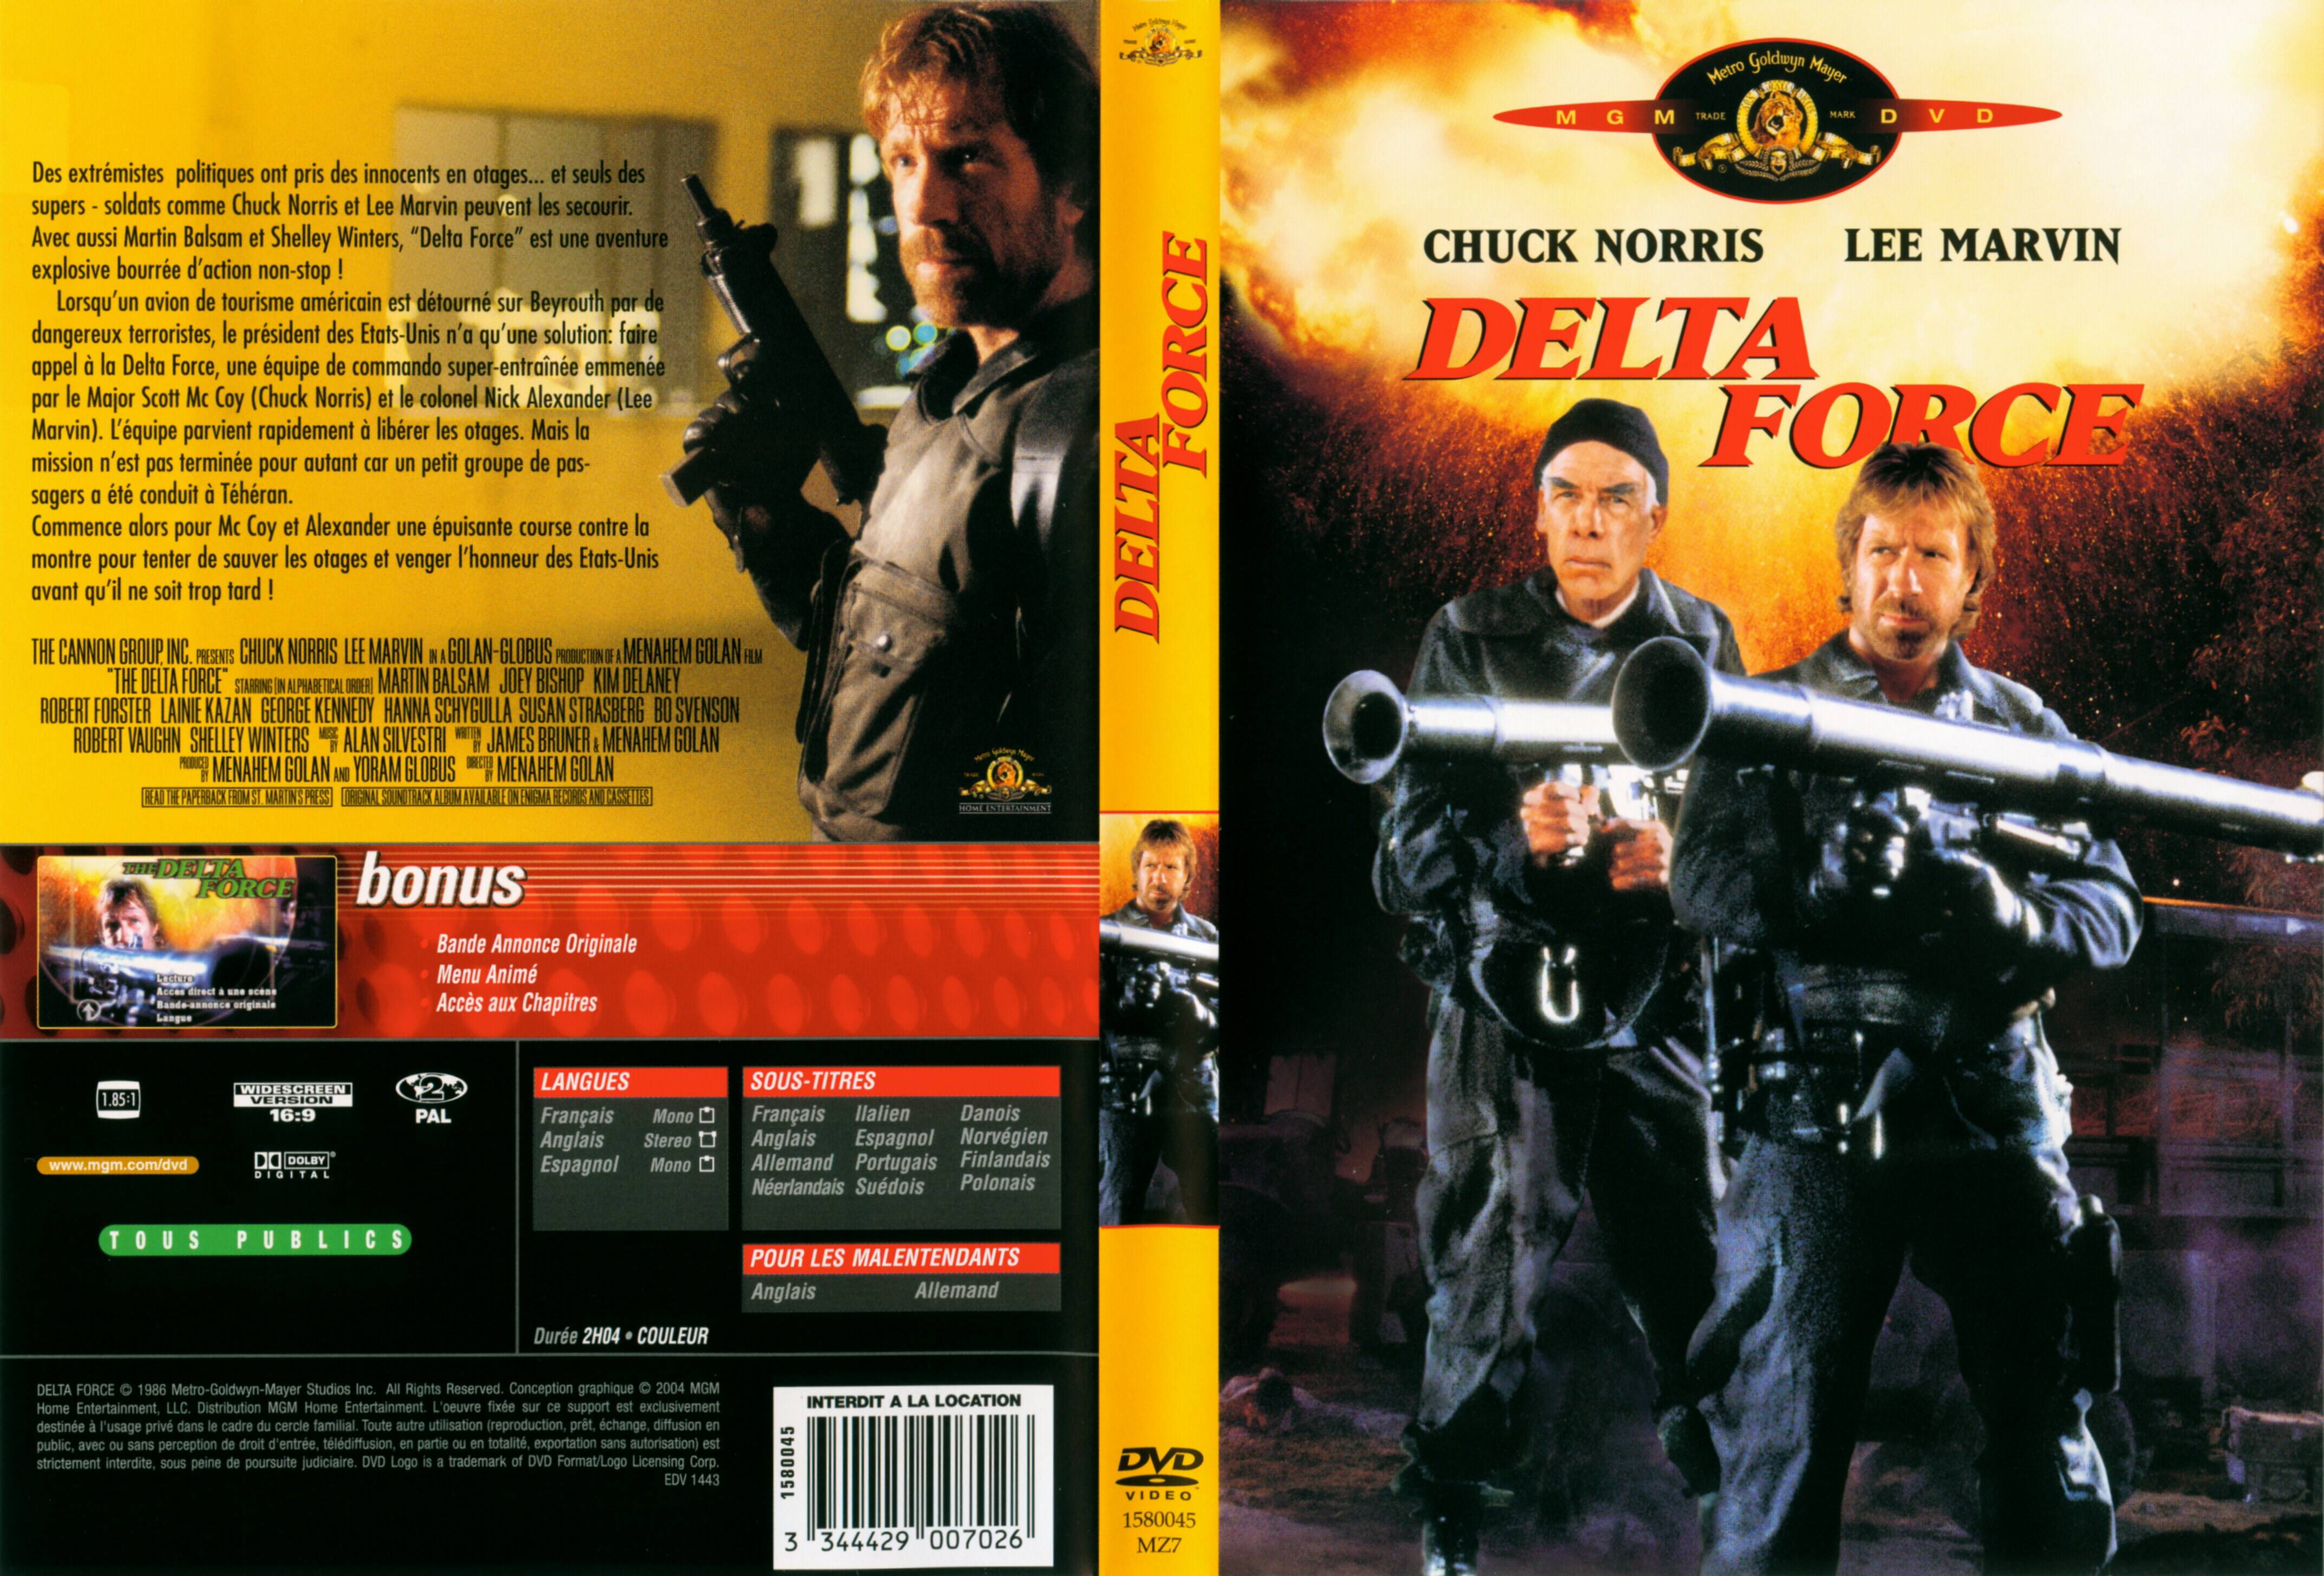 Jaquette DVD Delta force